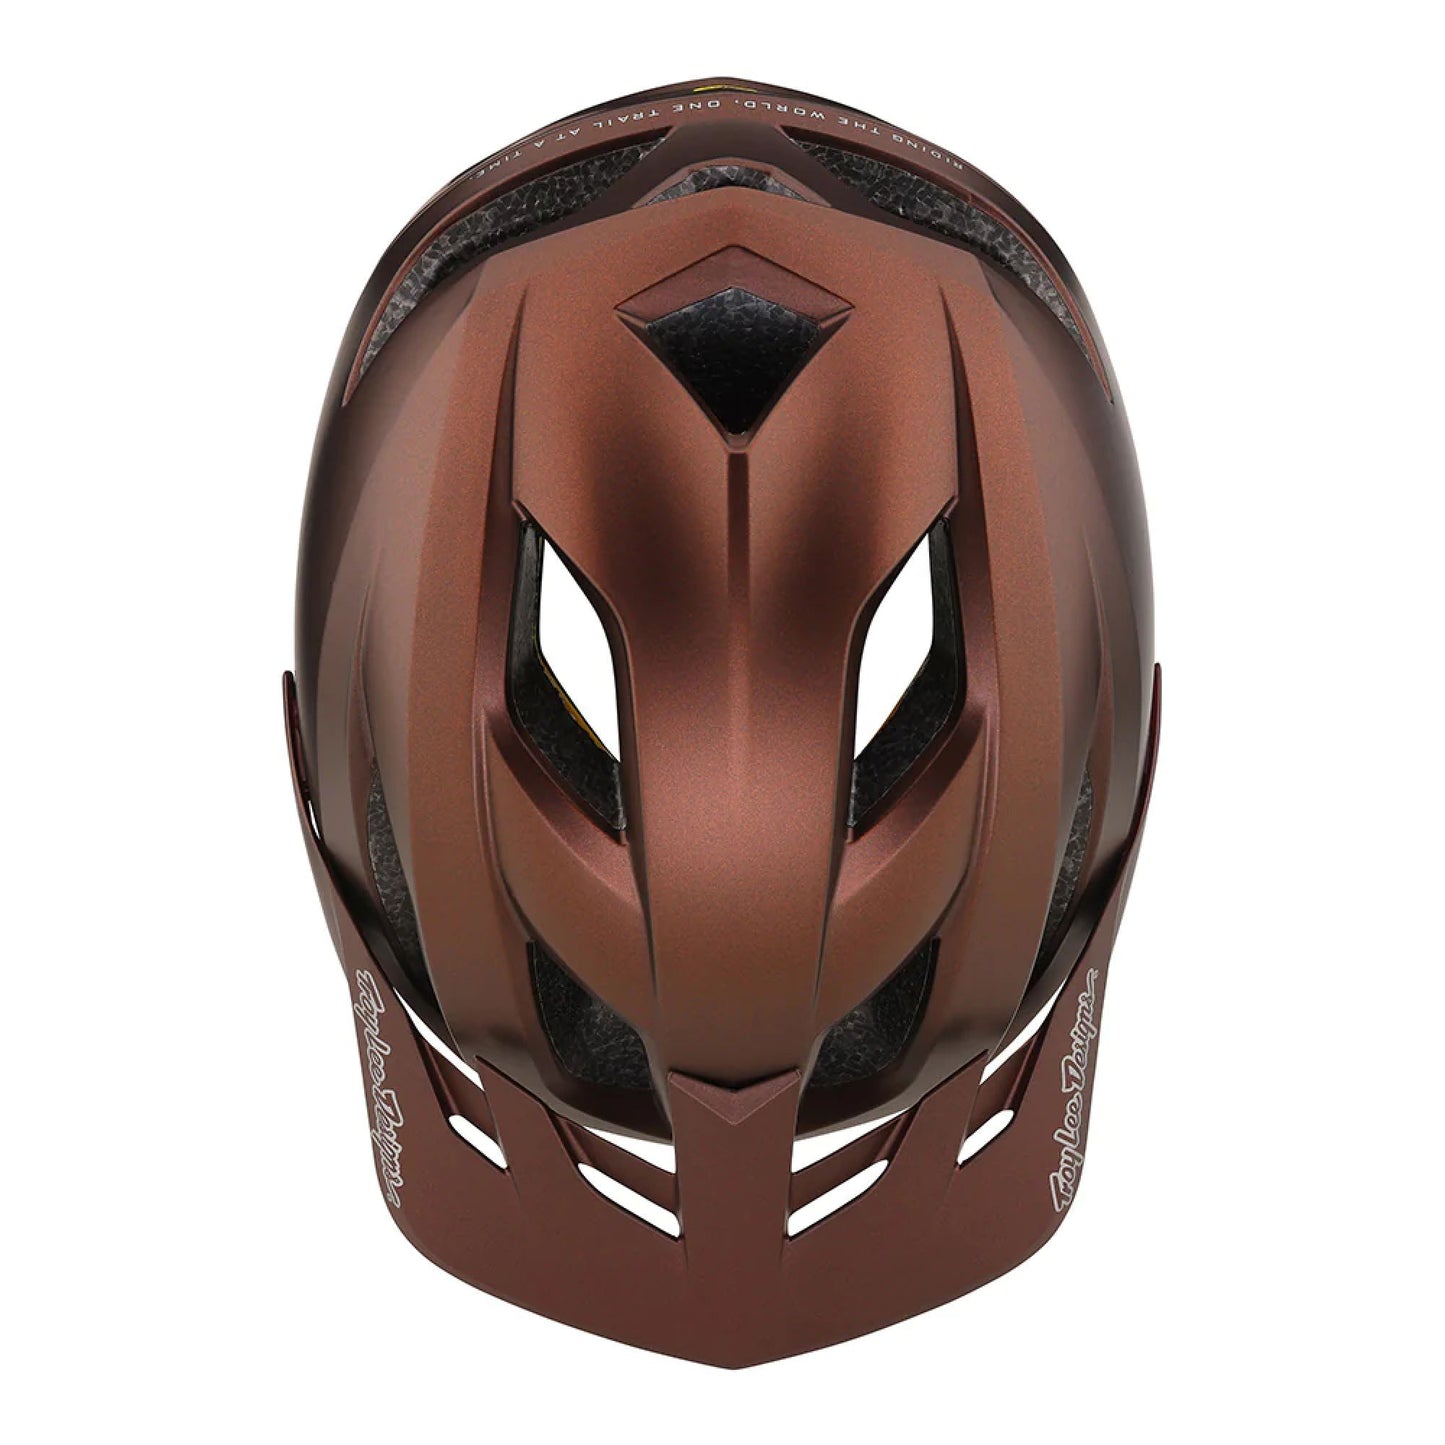 Troy Lee Designs Flowline MIPS Helmet Orbit Cinnamon Bike Helmets